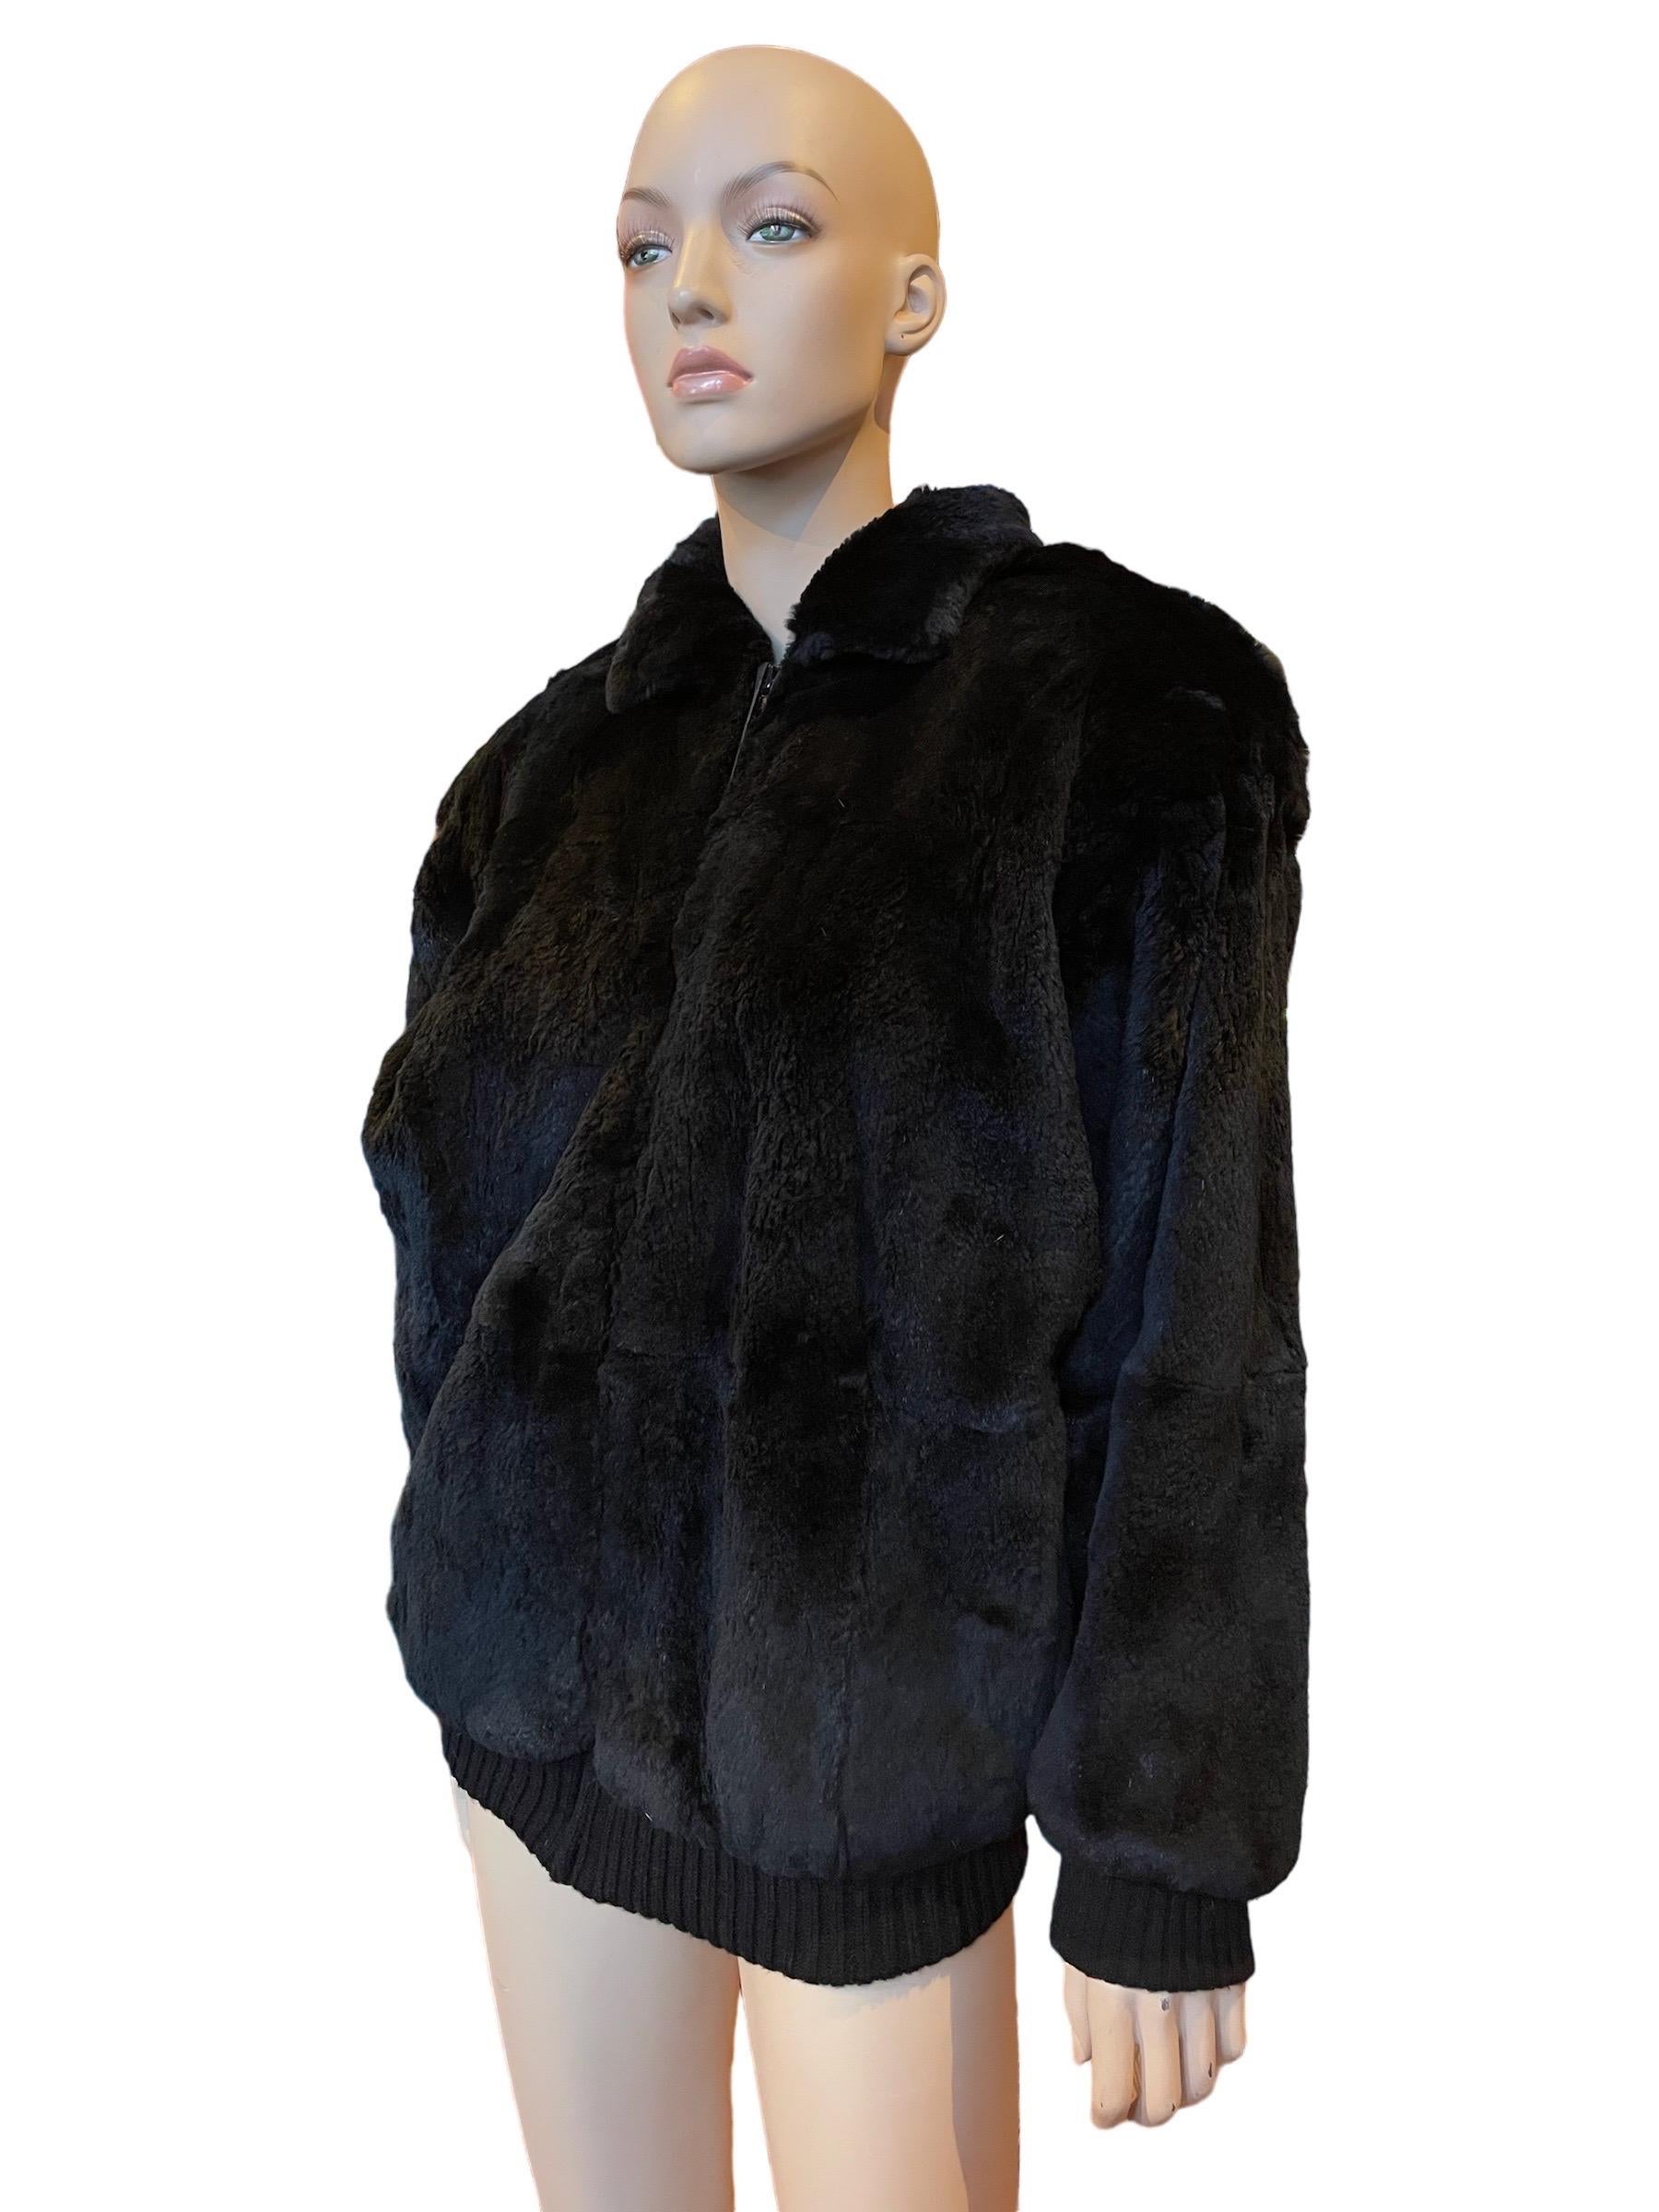 1980er Jahre Weiche schwarze Pelz-Zip-up-Jacke 

Eine tolle Pelzjacke mit Reißverschluss aus den 1980er Jahren. Superweiches schwarzes Fell, mit Schulterpads. 

